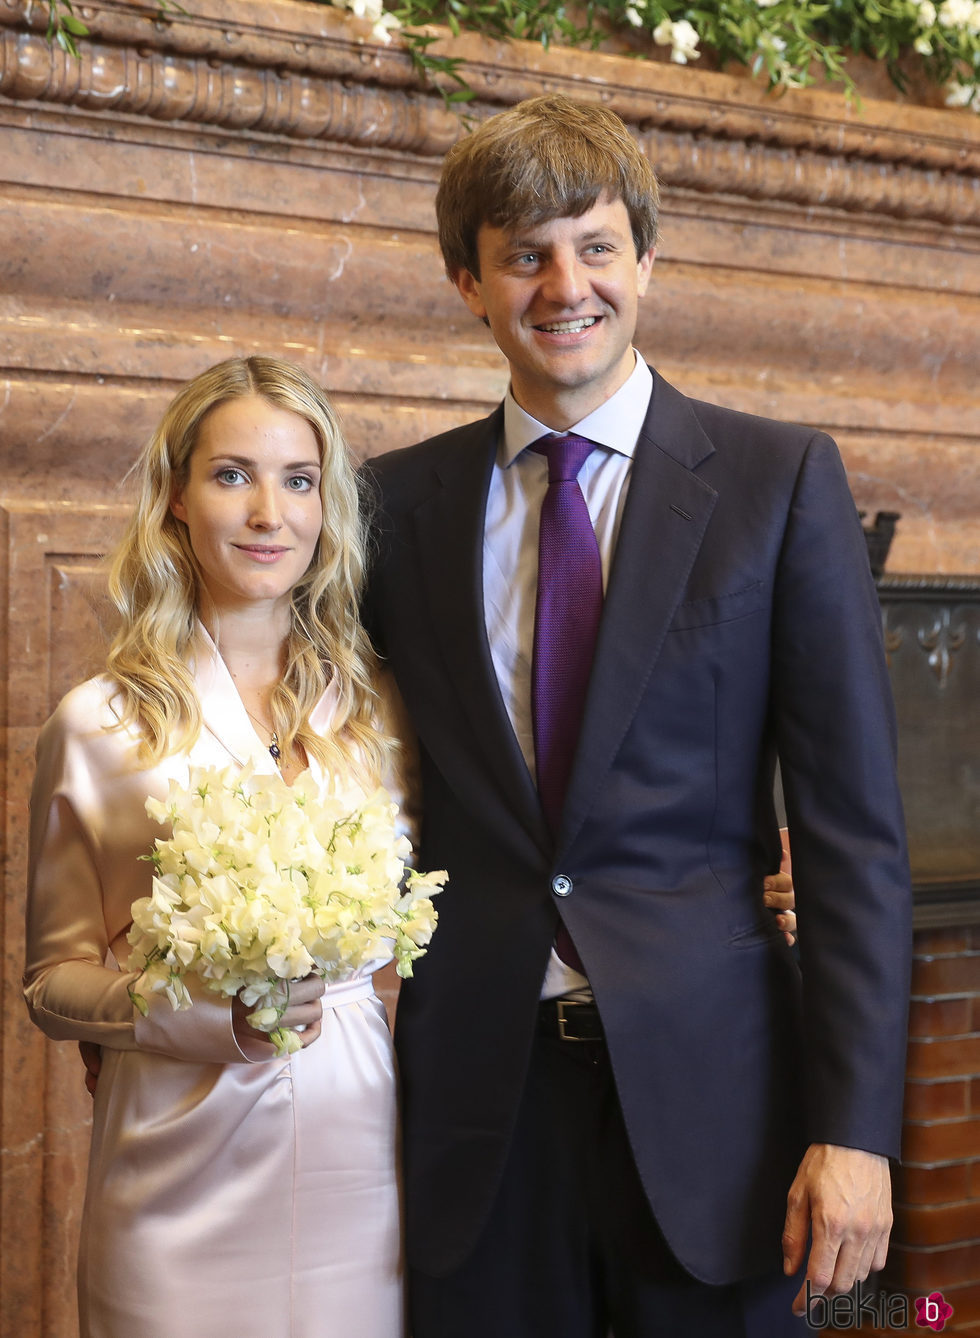 Ernst August de Hannover y Ekaterina Malysheva en su boda civil